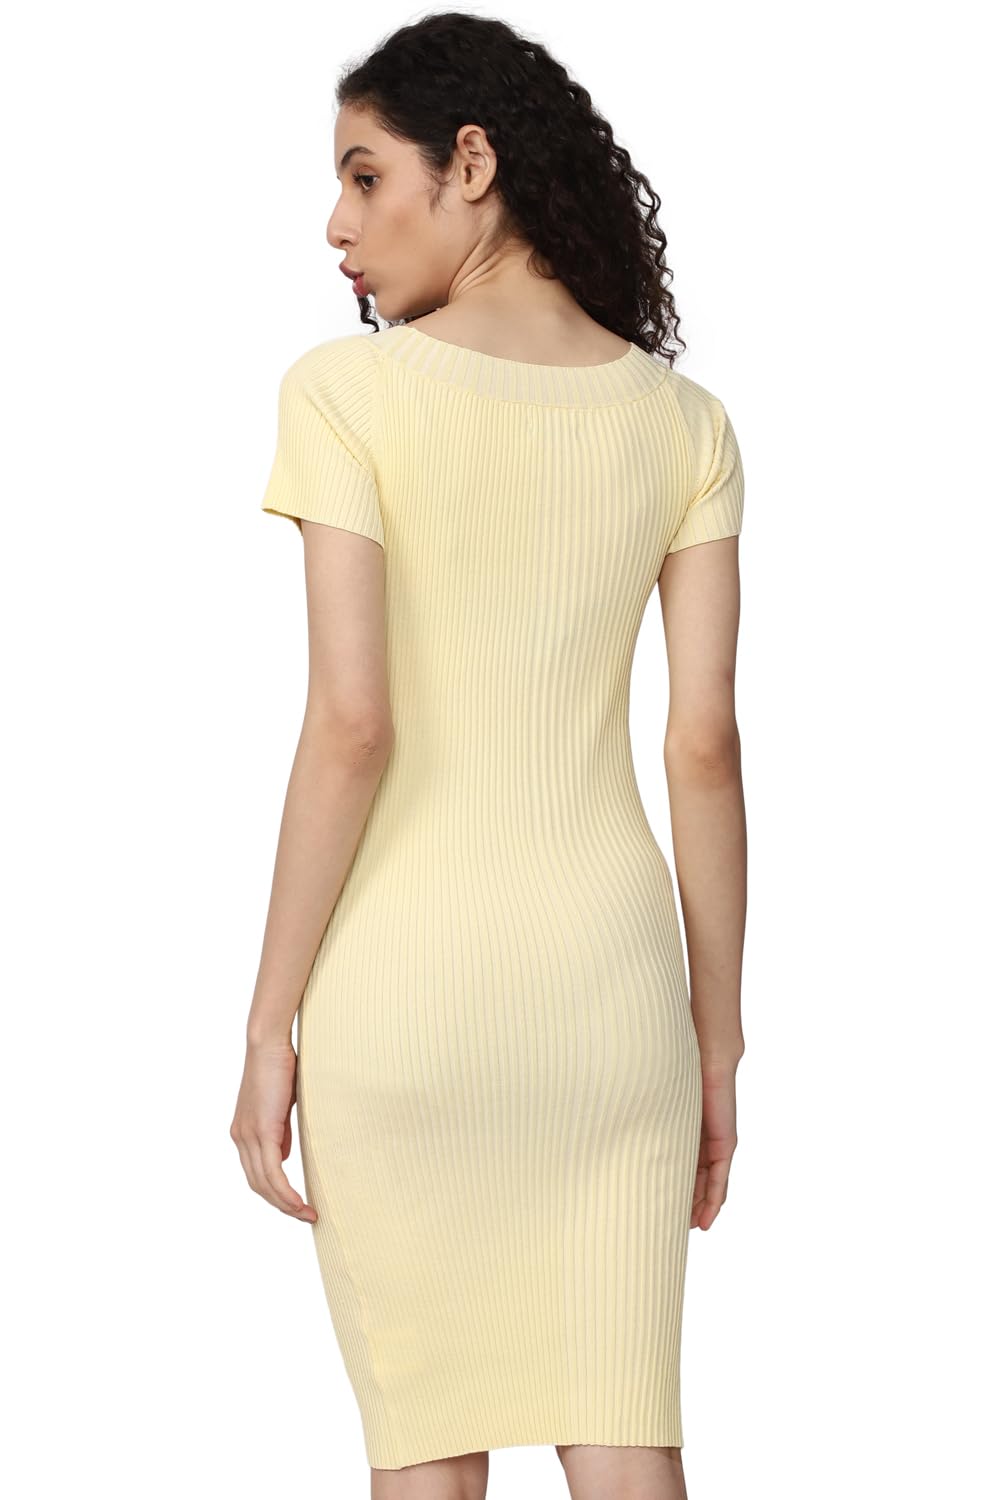 Van Heusen Women's Viscose Asymmetrical Knee-Length Dress (VWFDFRGH492655_Yellow